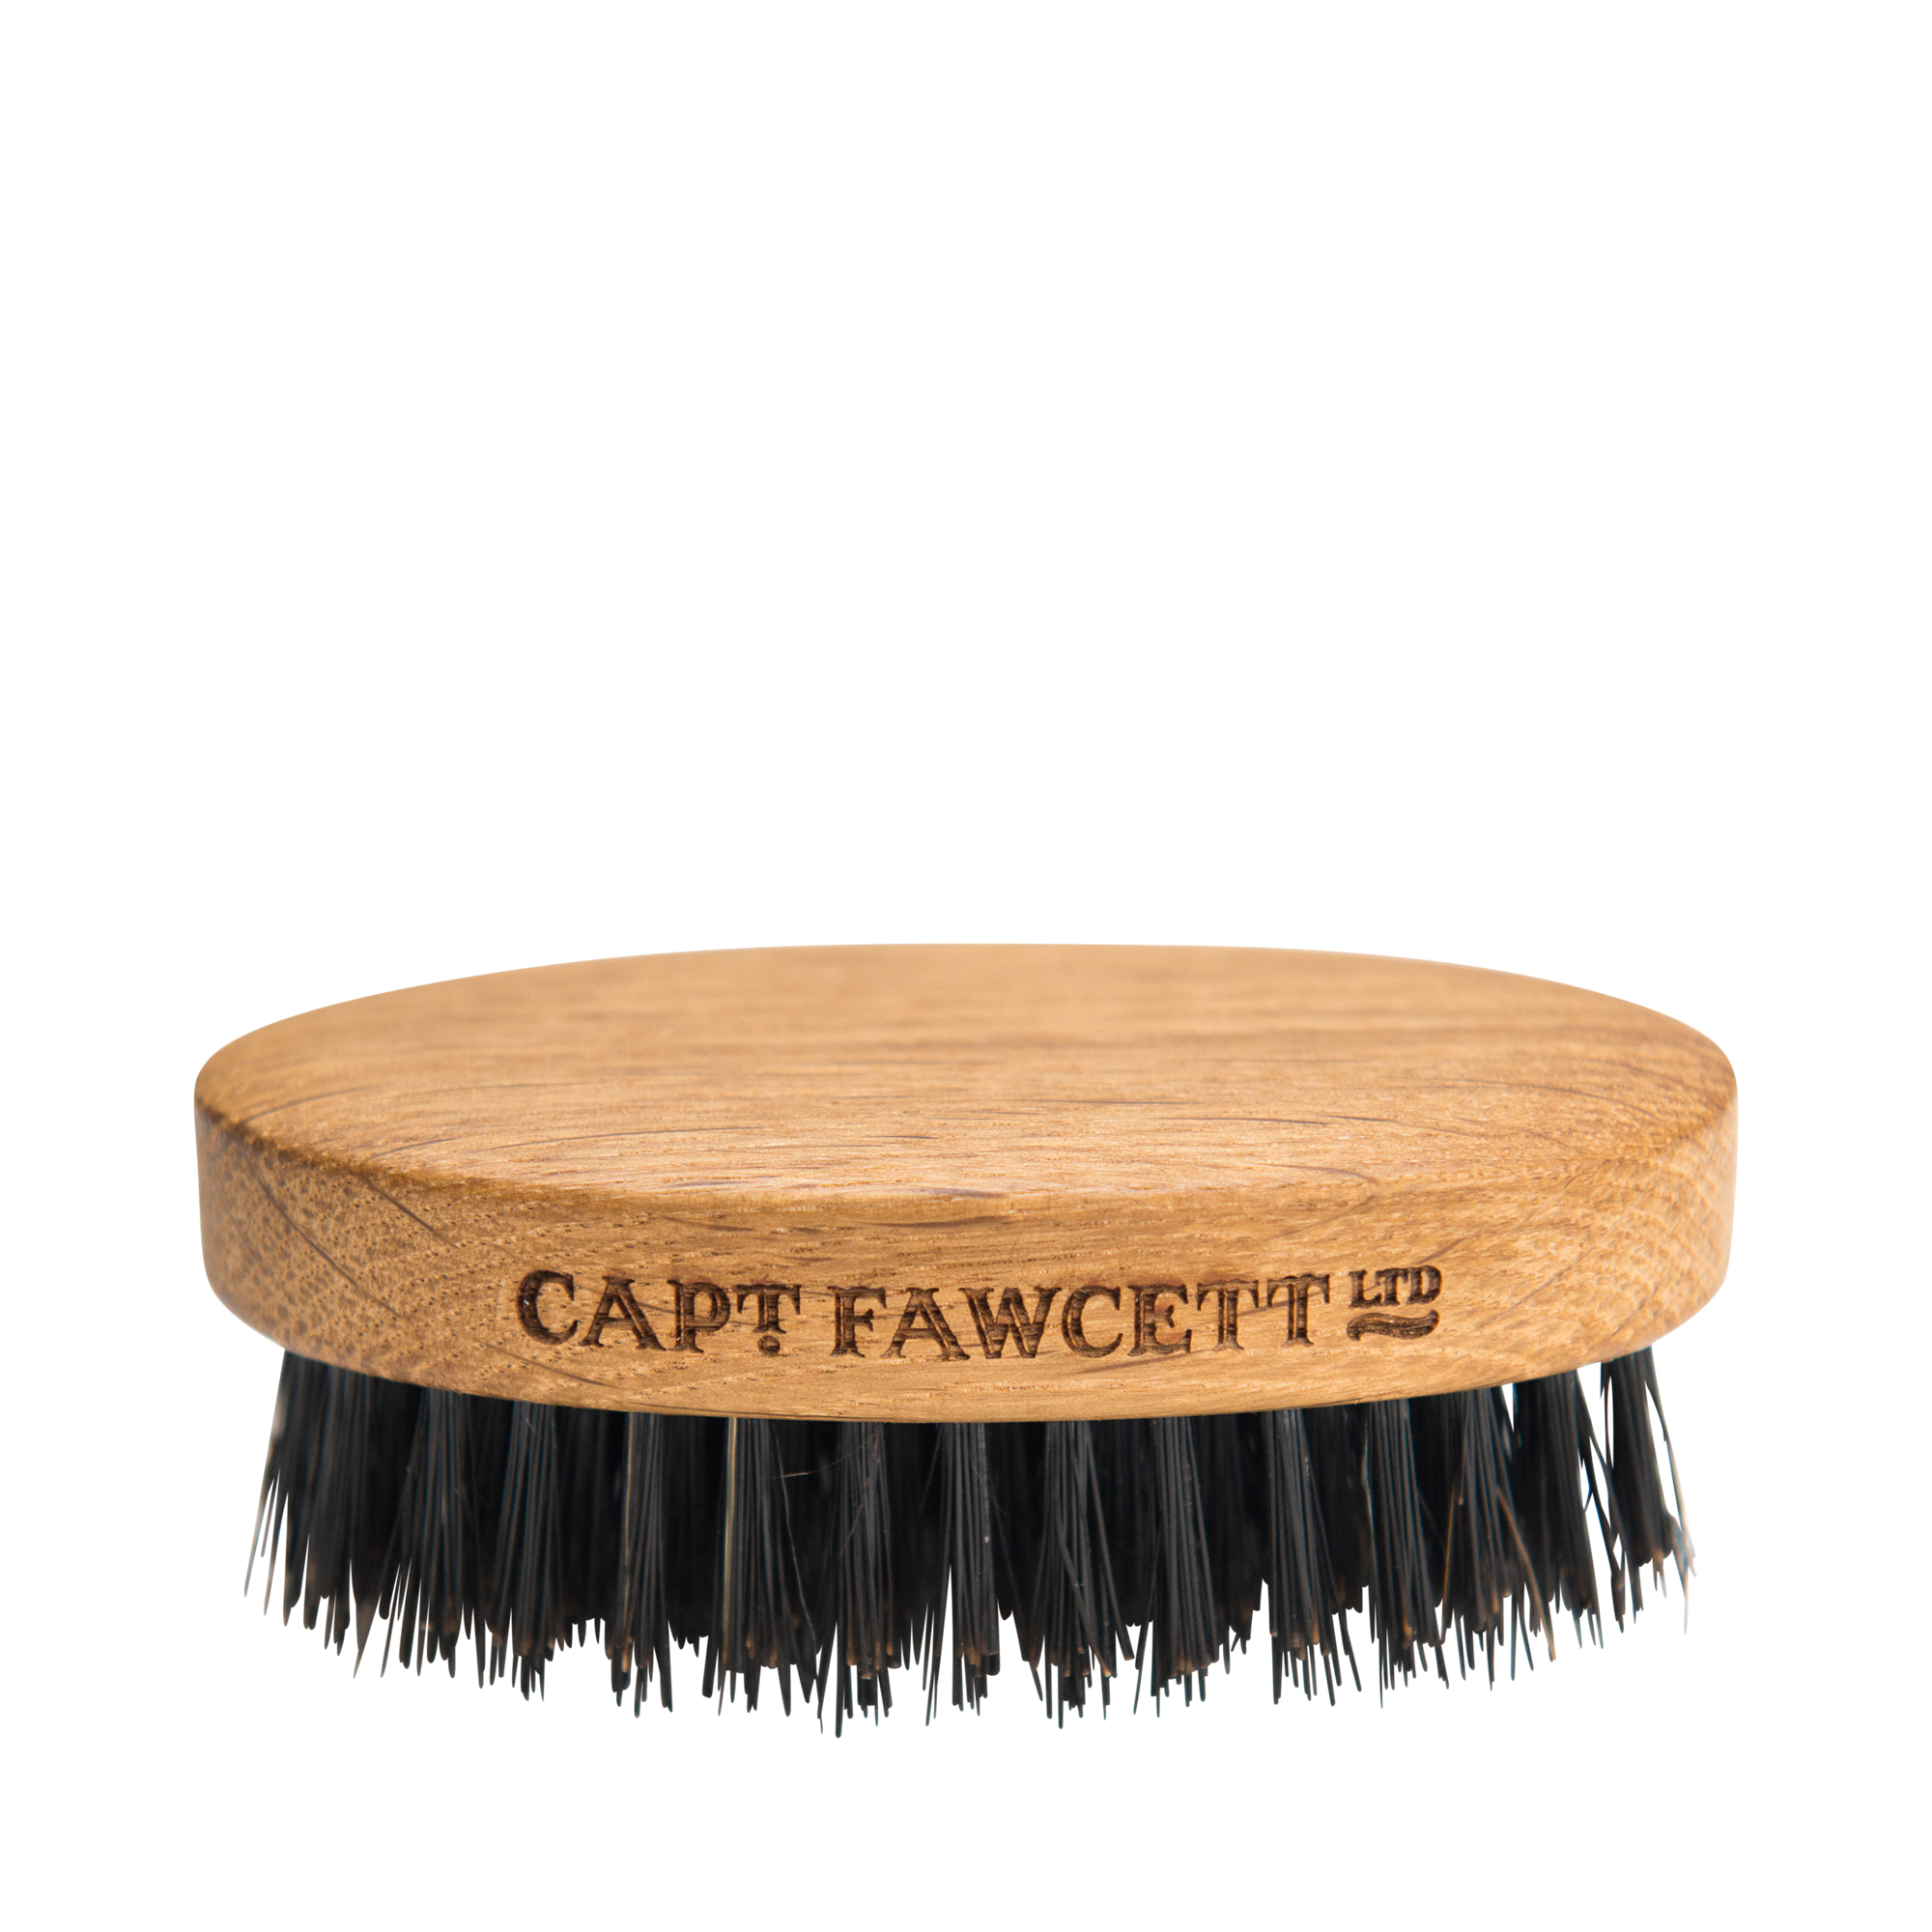 Captain Fawcett - Bartbürste oval mit Wildschweinborste, Eichenholz